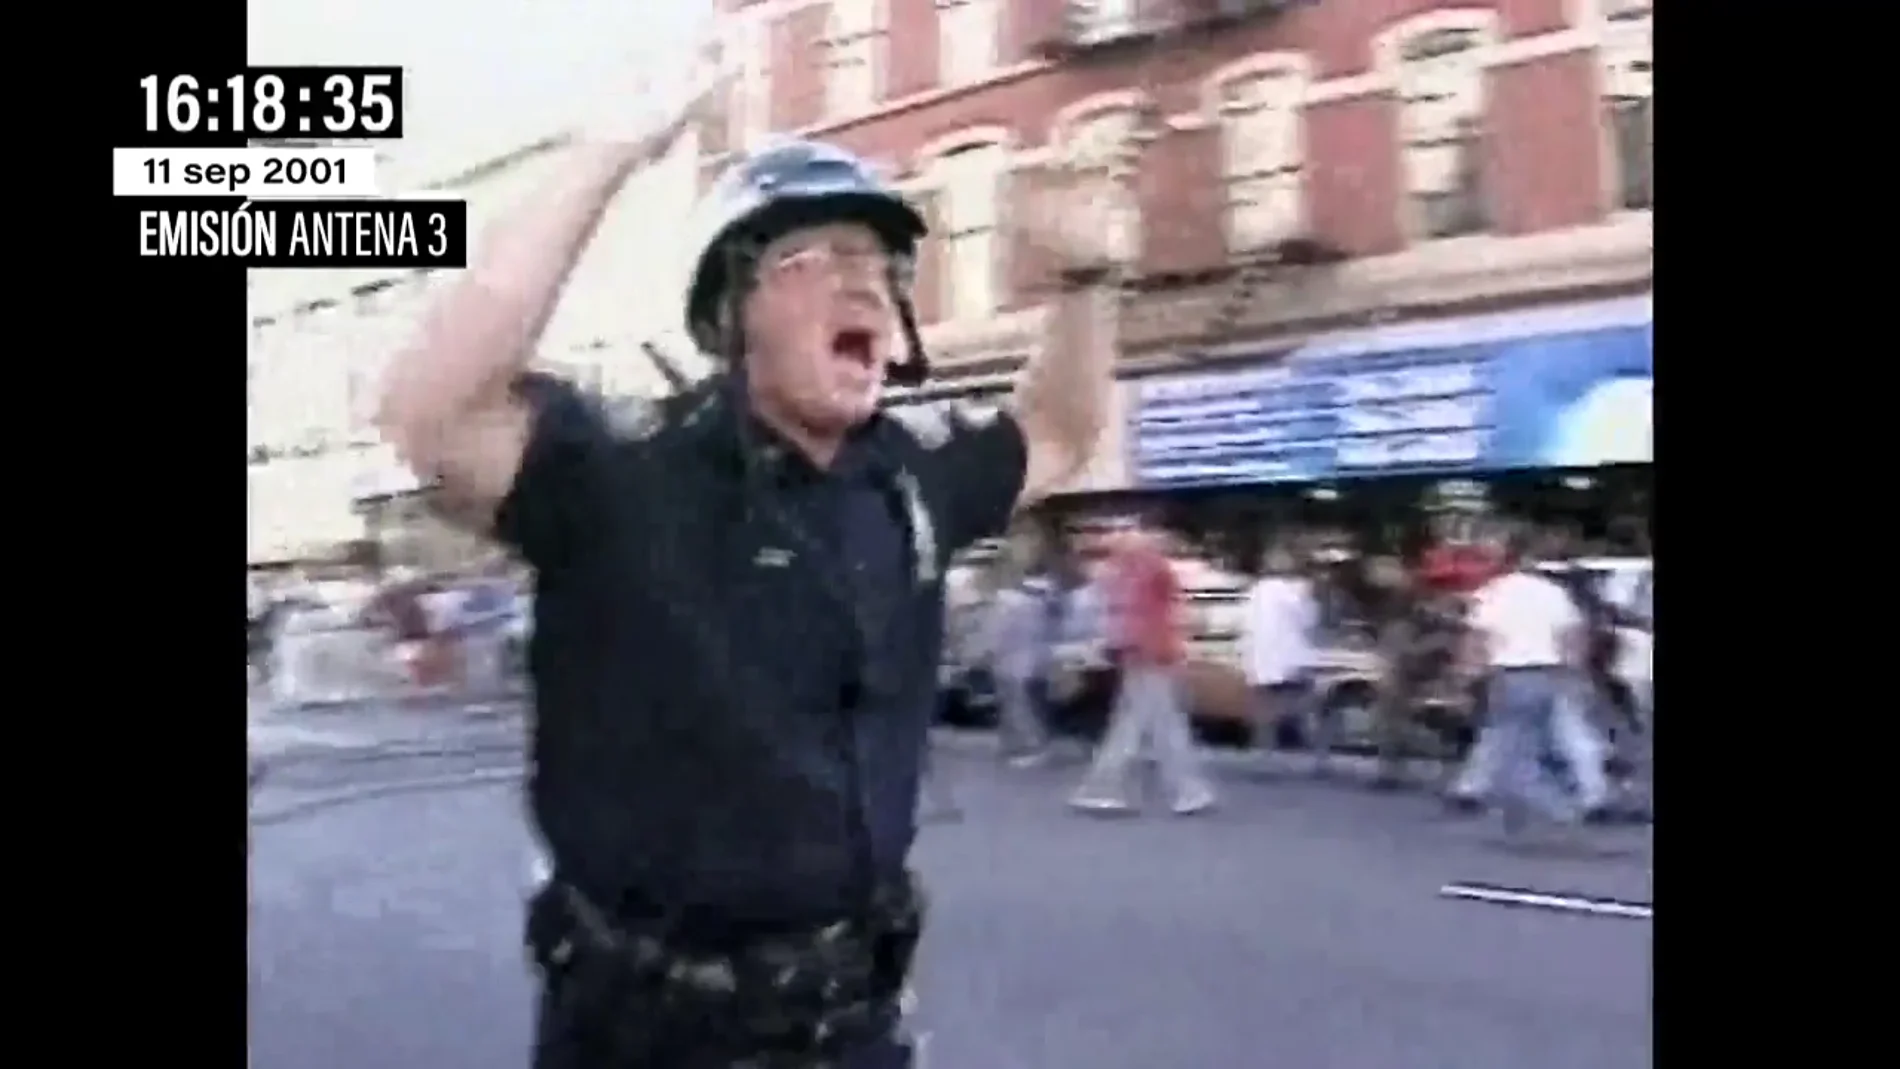 El vídeo de los ciudadanos corriendo bajo el humo tras los choques contra las Torres Gemelas el 11S